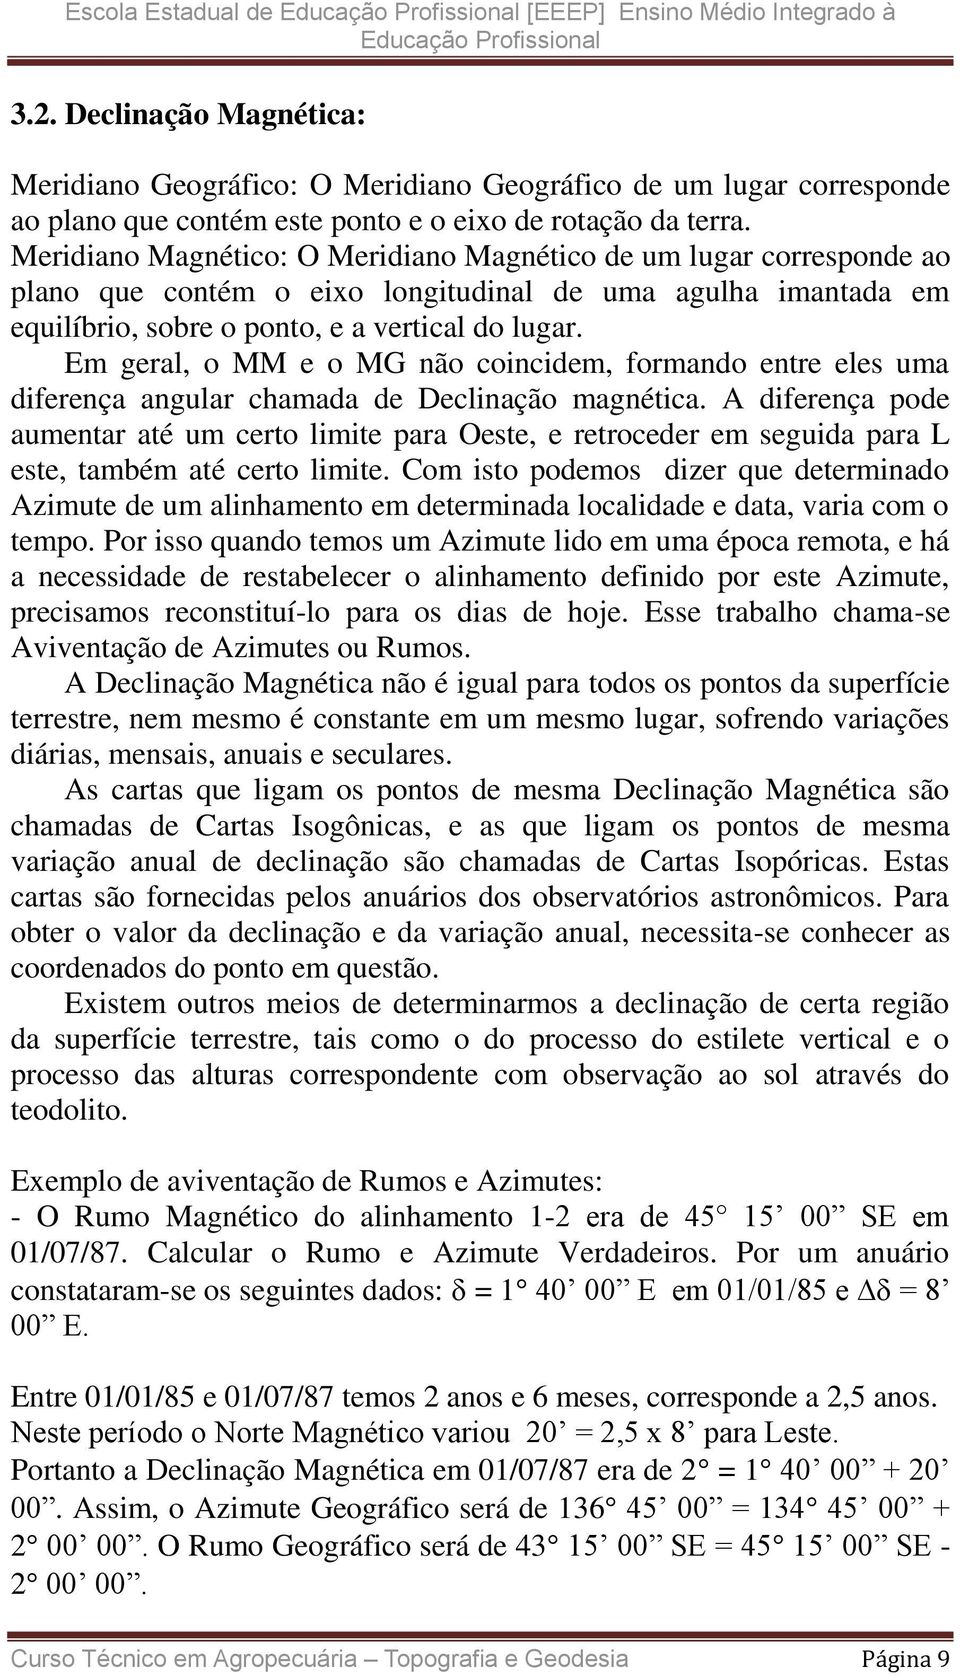 Meridiano Magnético: O Meridiano Magnético de um lugar corresponde ao plano que contém o eixo longitudinal de uma agulha imantada em equilíbrio, sobre o ponto, e a vertical do lugar.